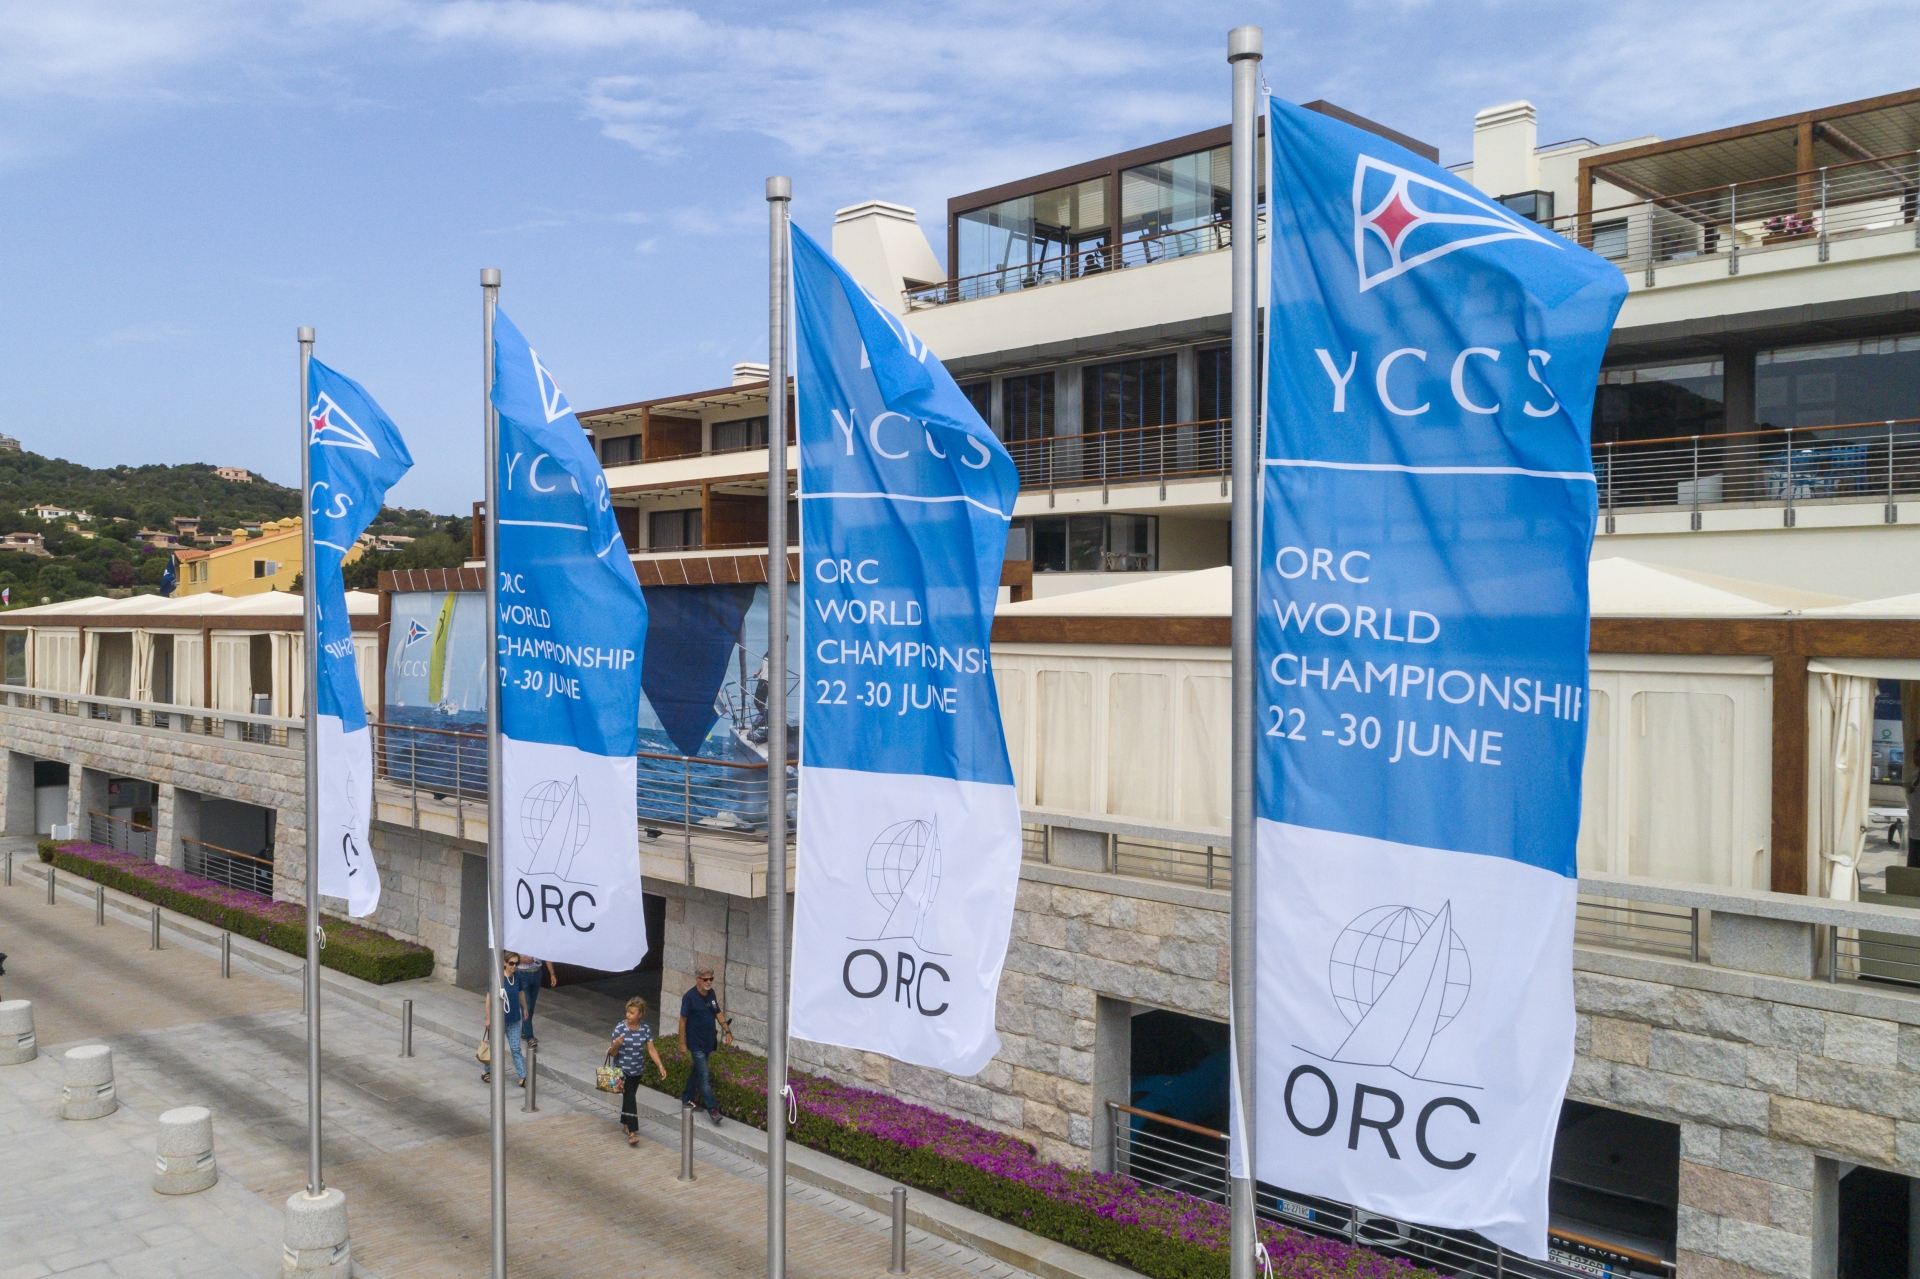 Campionato Mondiale ORC, la vela d’altura è a Porto Cervo - News - Yacht Club Costa Smeralda